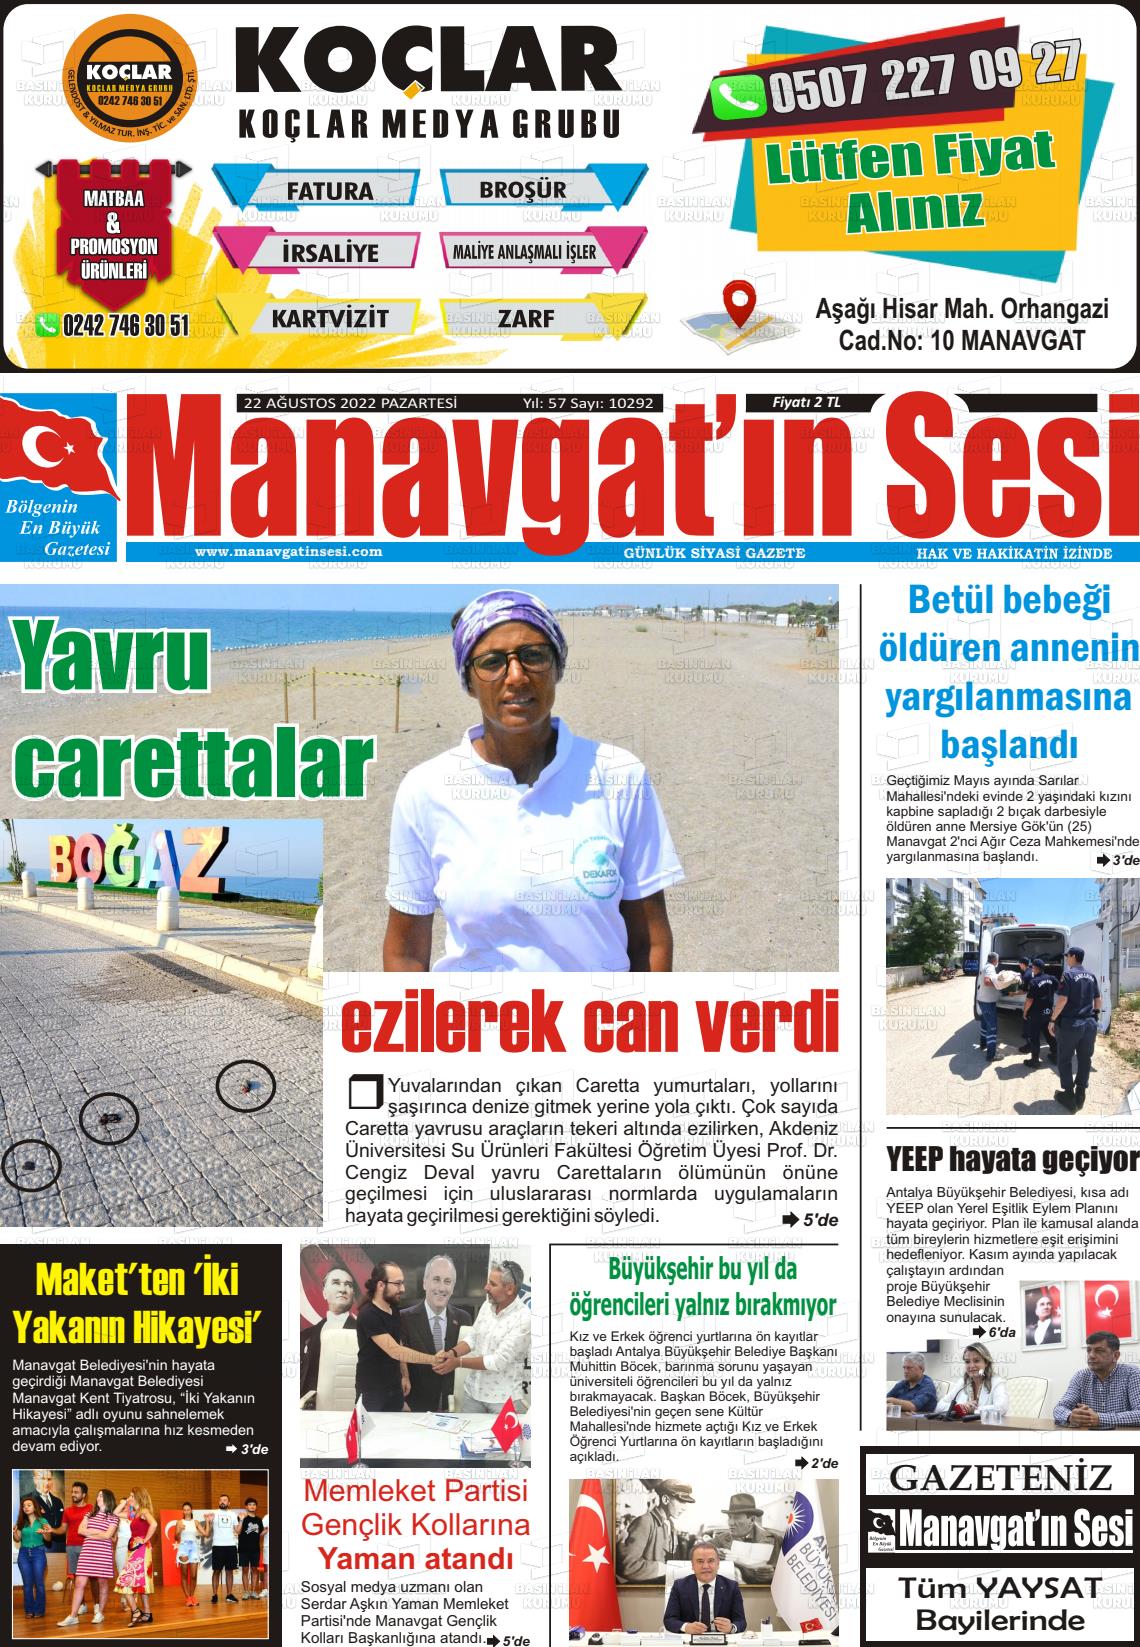 22 Ağustos 2022 Manavgat'ın Sesi Gazete Manşeti